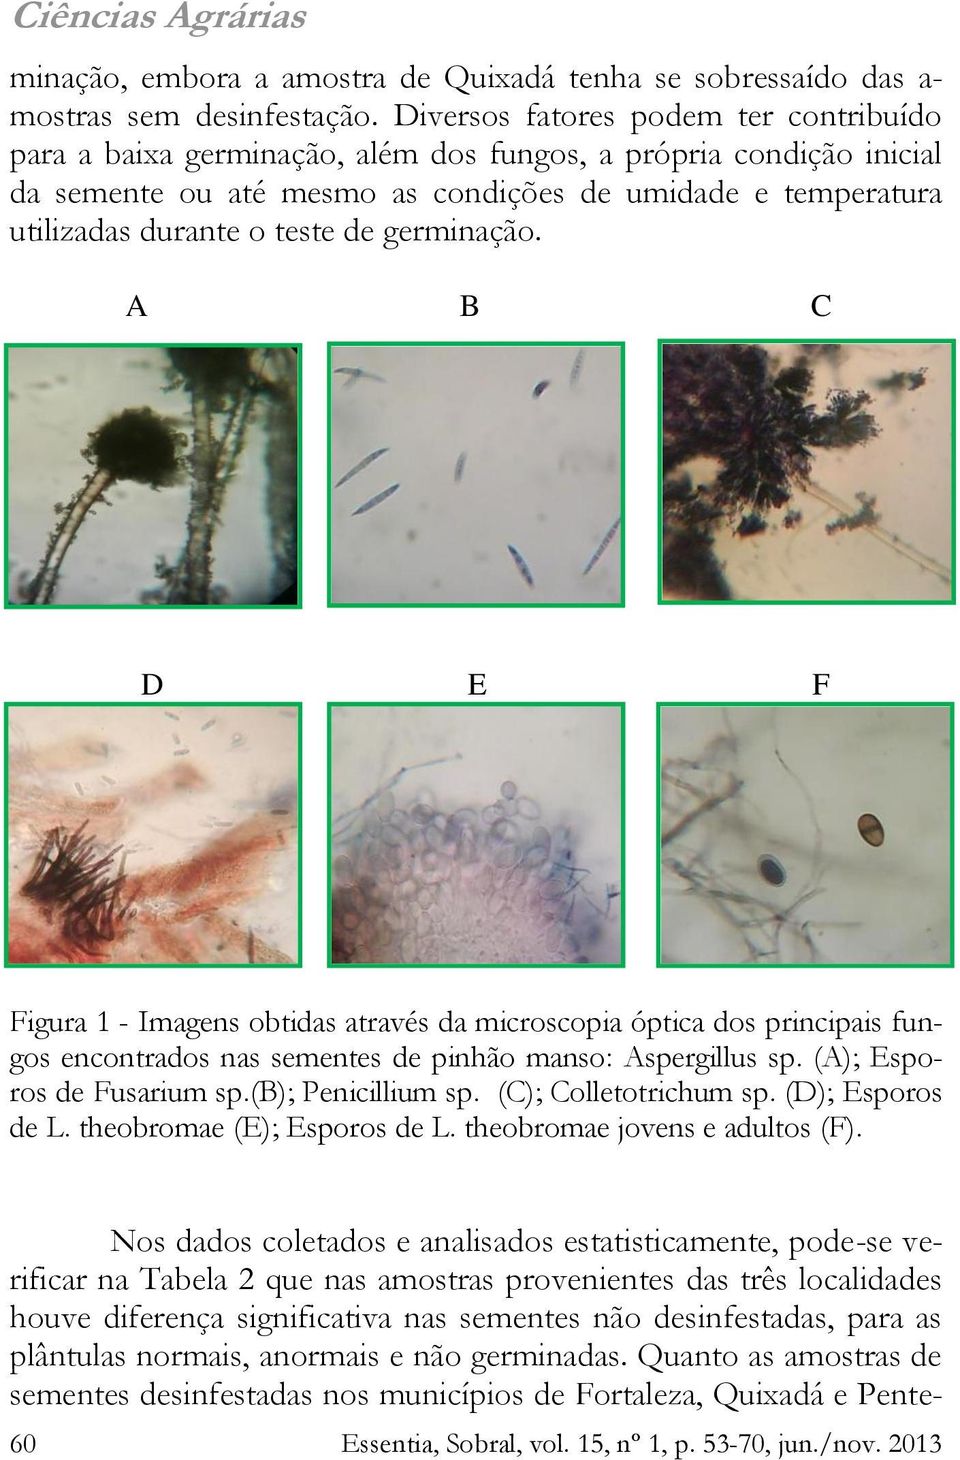 germinação. A B C D E F Figura 1 - Imagens obtidas através da microscopia óptica dos principais fungos encontrados nas sementes de pinhão manso: Aspergillus sp. (A); Esporos de Fusarium sp.